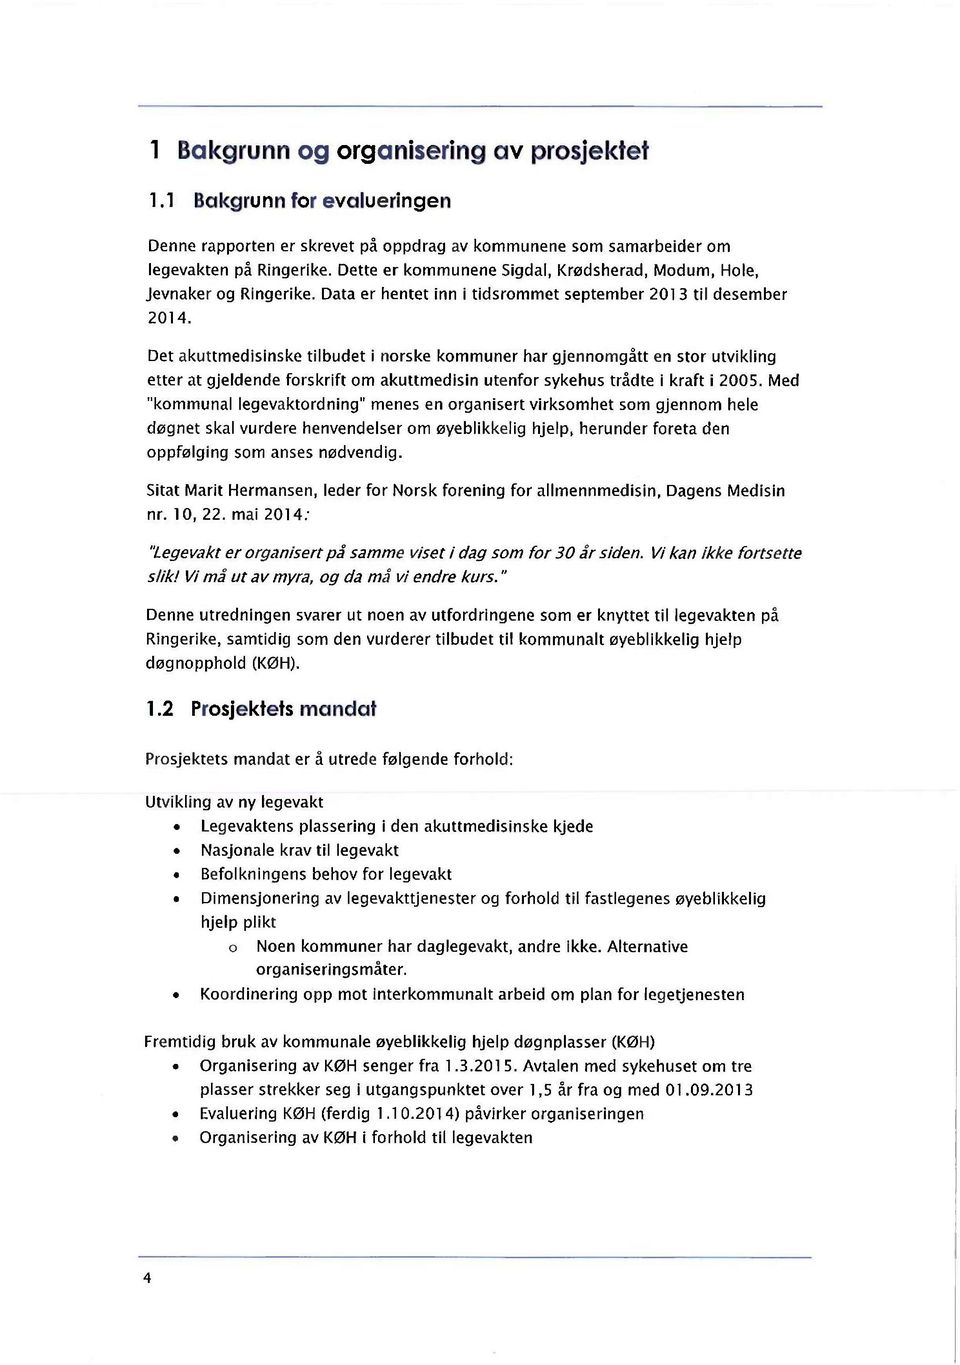 Det akuttmedisinske tilbudet i nrske kmmuner har gjennmgått en str utvikling etter at gjeldende frskrift m akuttmedisin utenfr sykehus trådte i kraft i 2005.